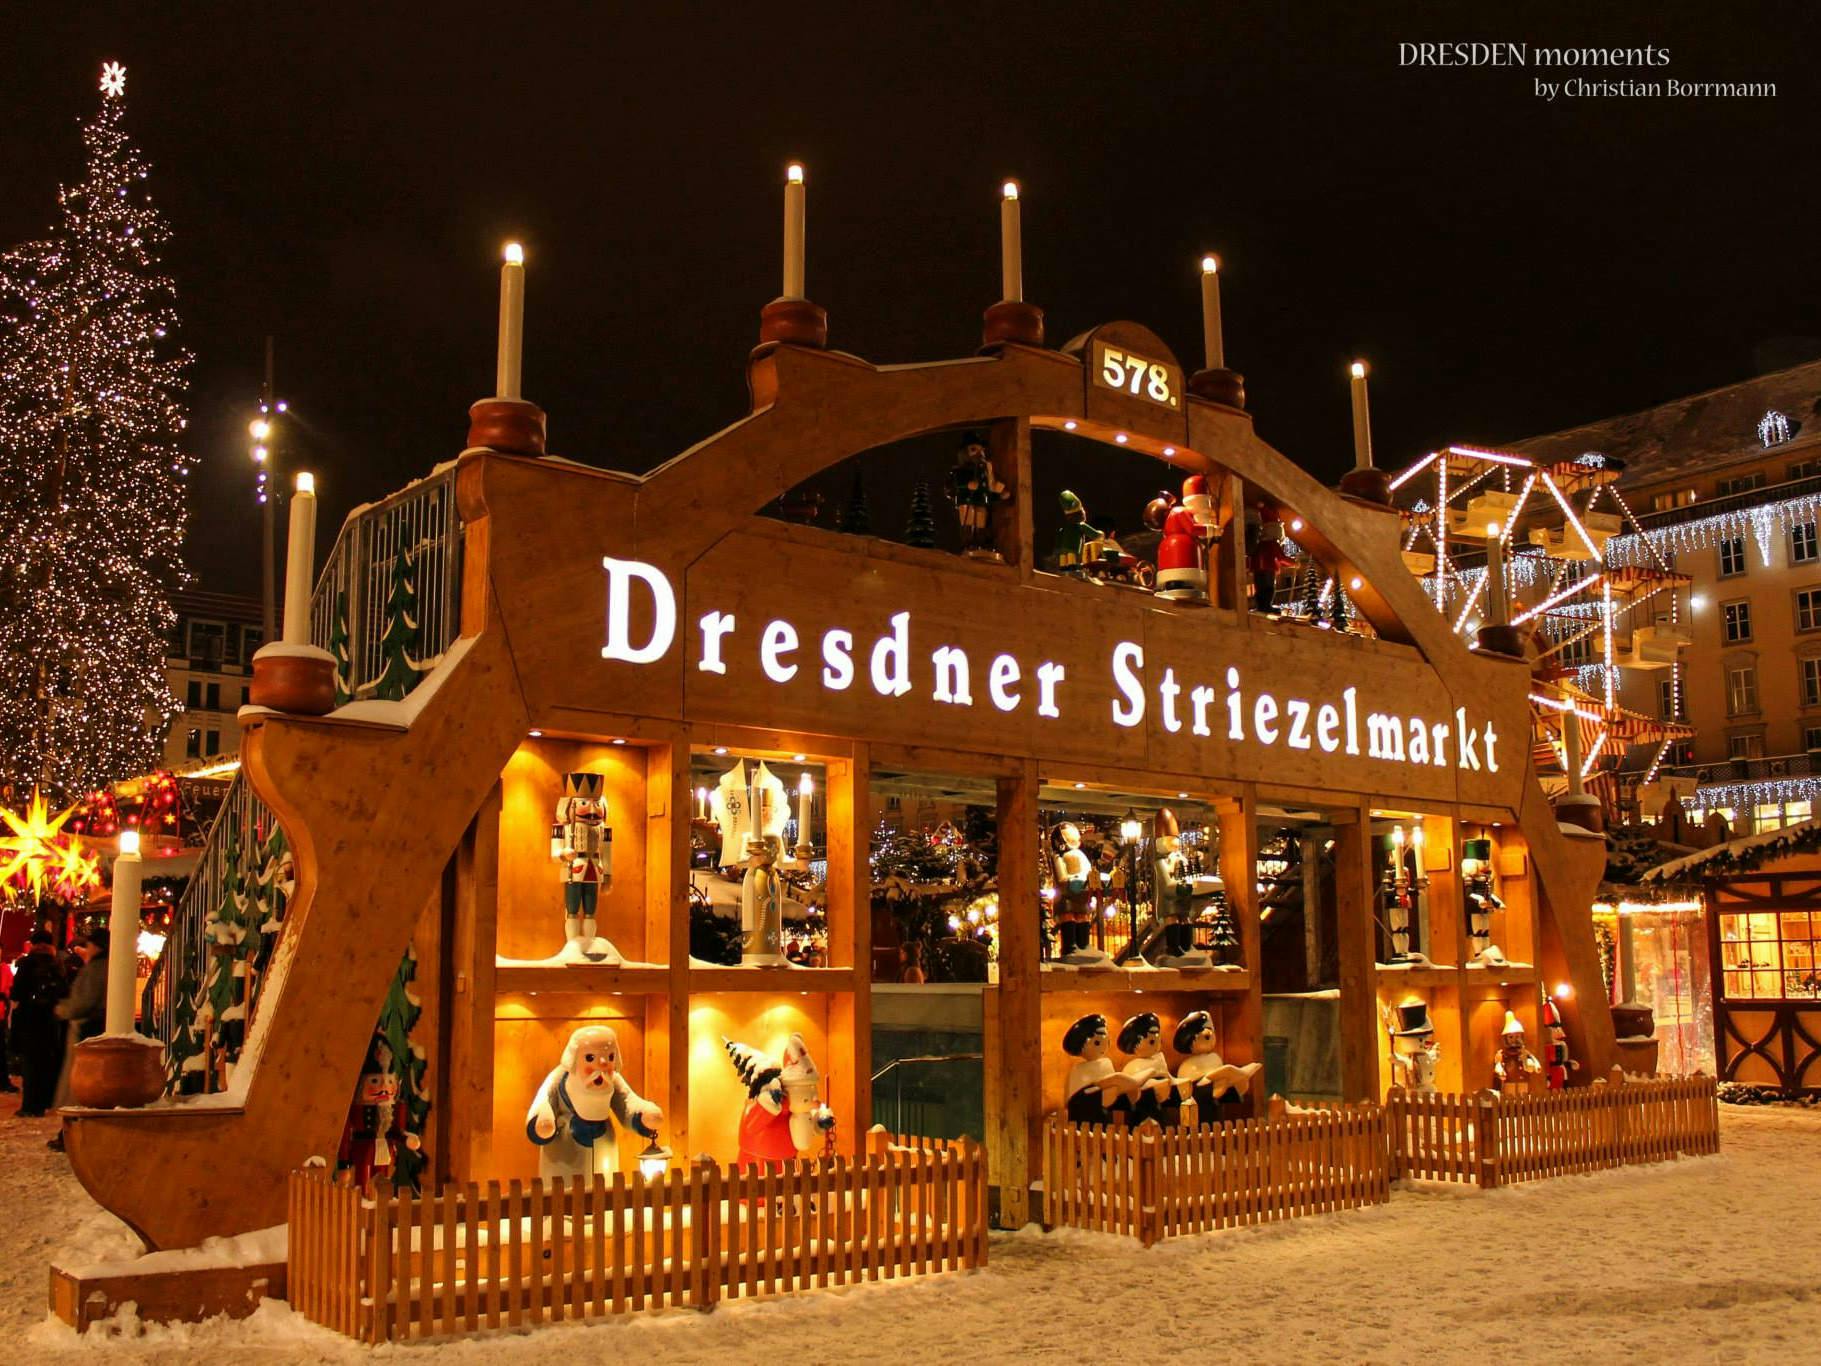 Tour navideño de Dresde con degustación de stollen y vino caliente